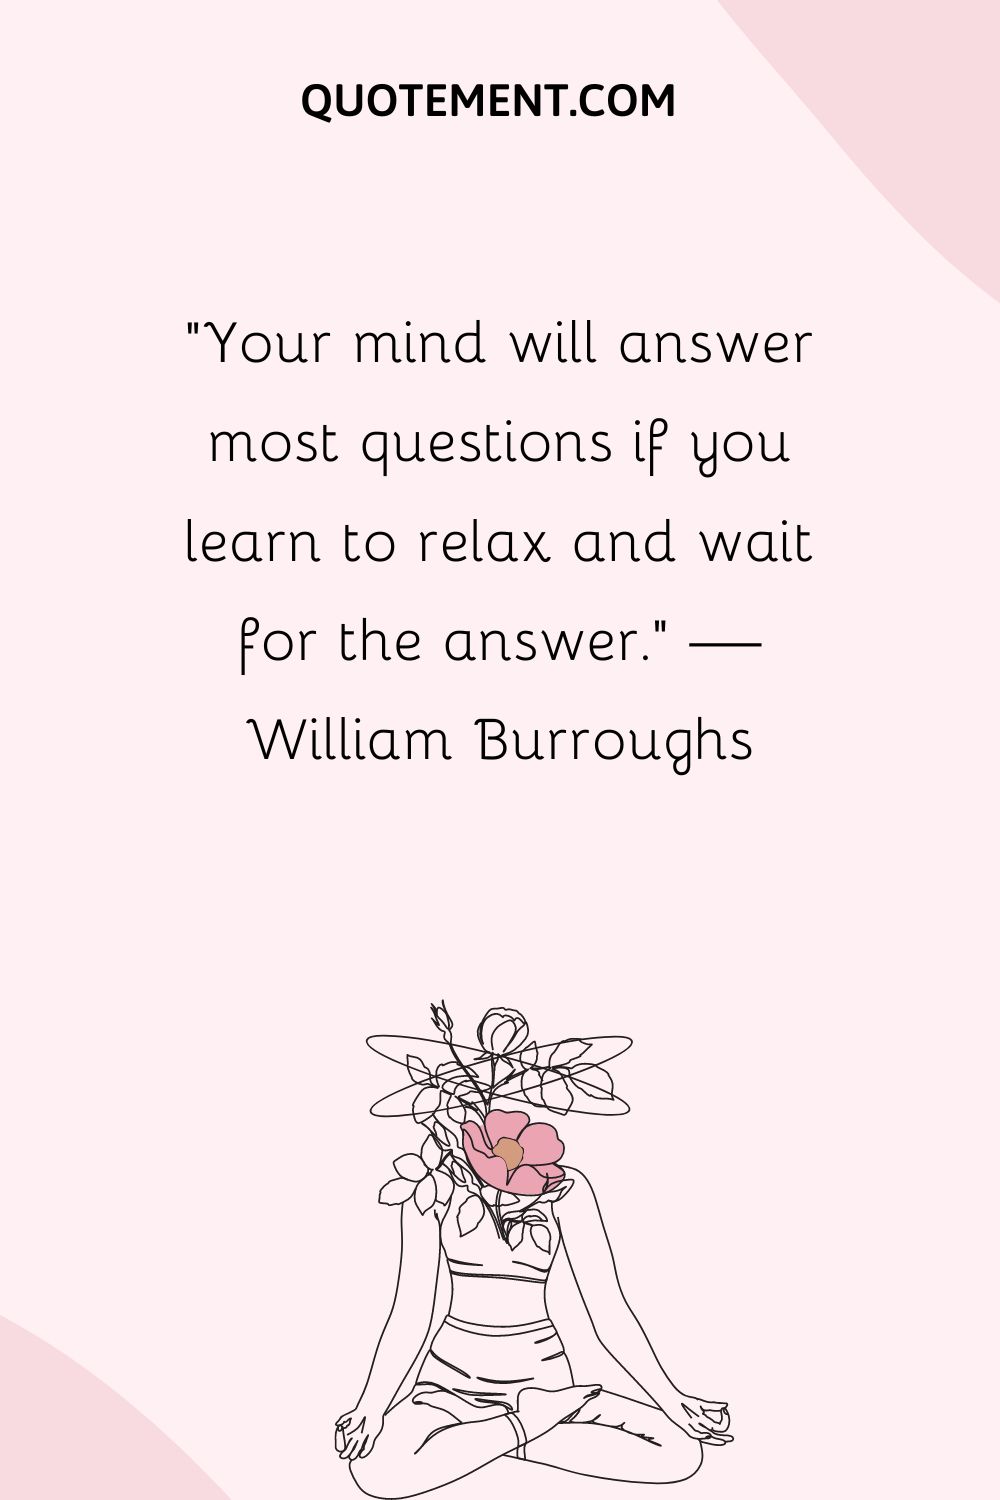 Tu mente responderá a la mayoría de las preguntas si aprendes a relajarte y a esperar la respuesta